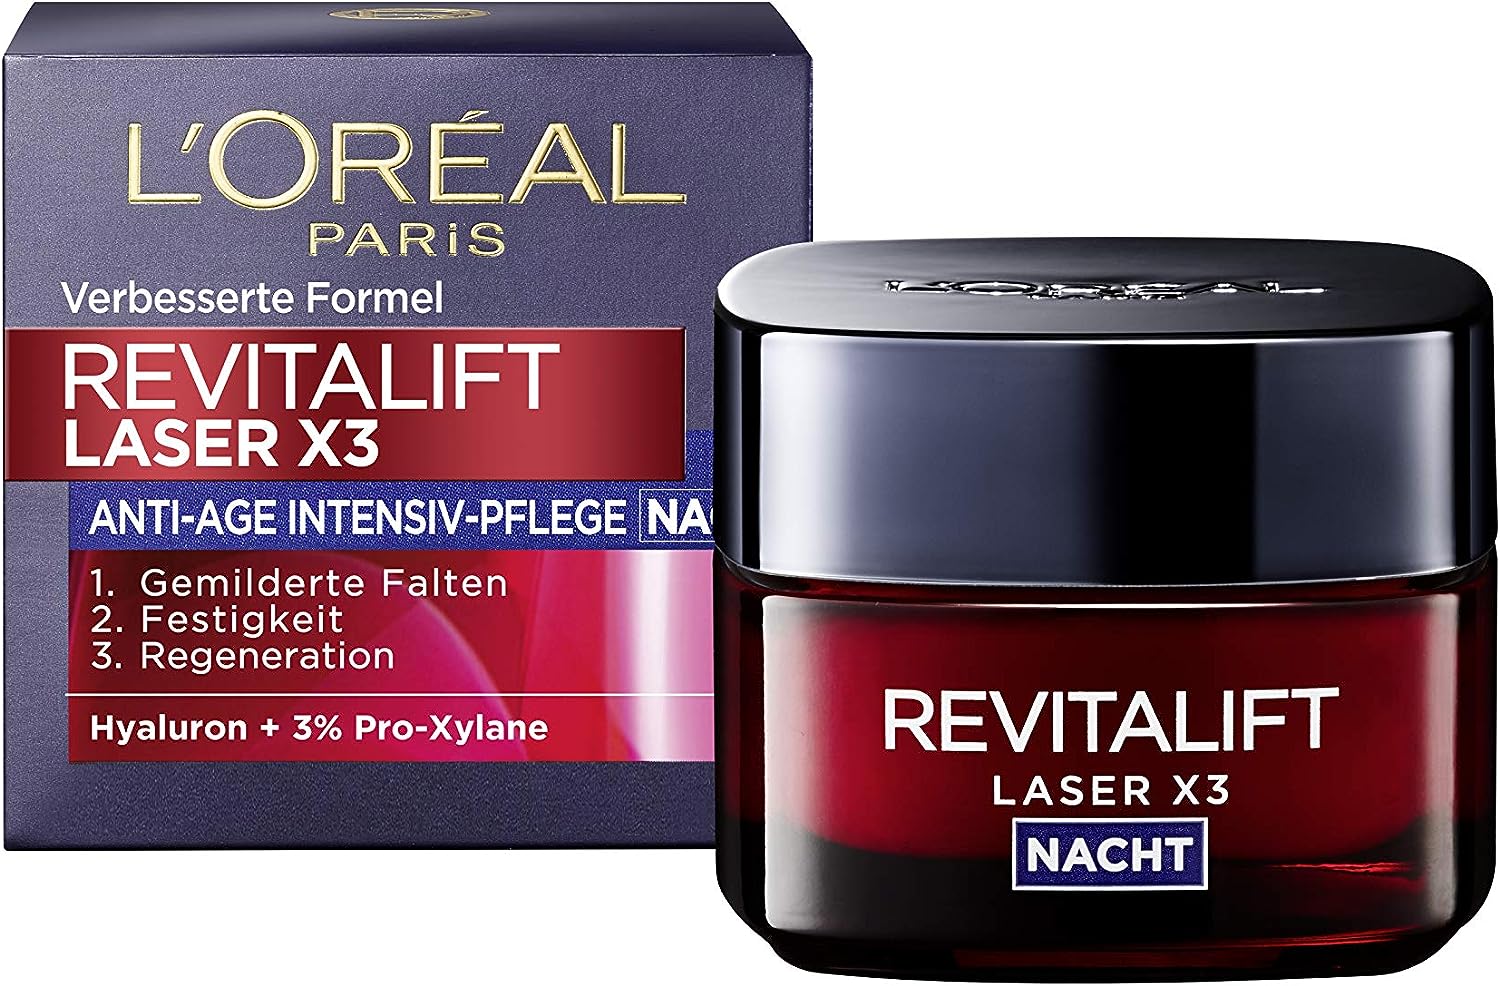 L’Oréal Paris Revitalift Laser X3 Nachtverzorging review